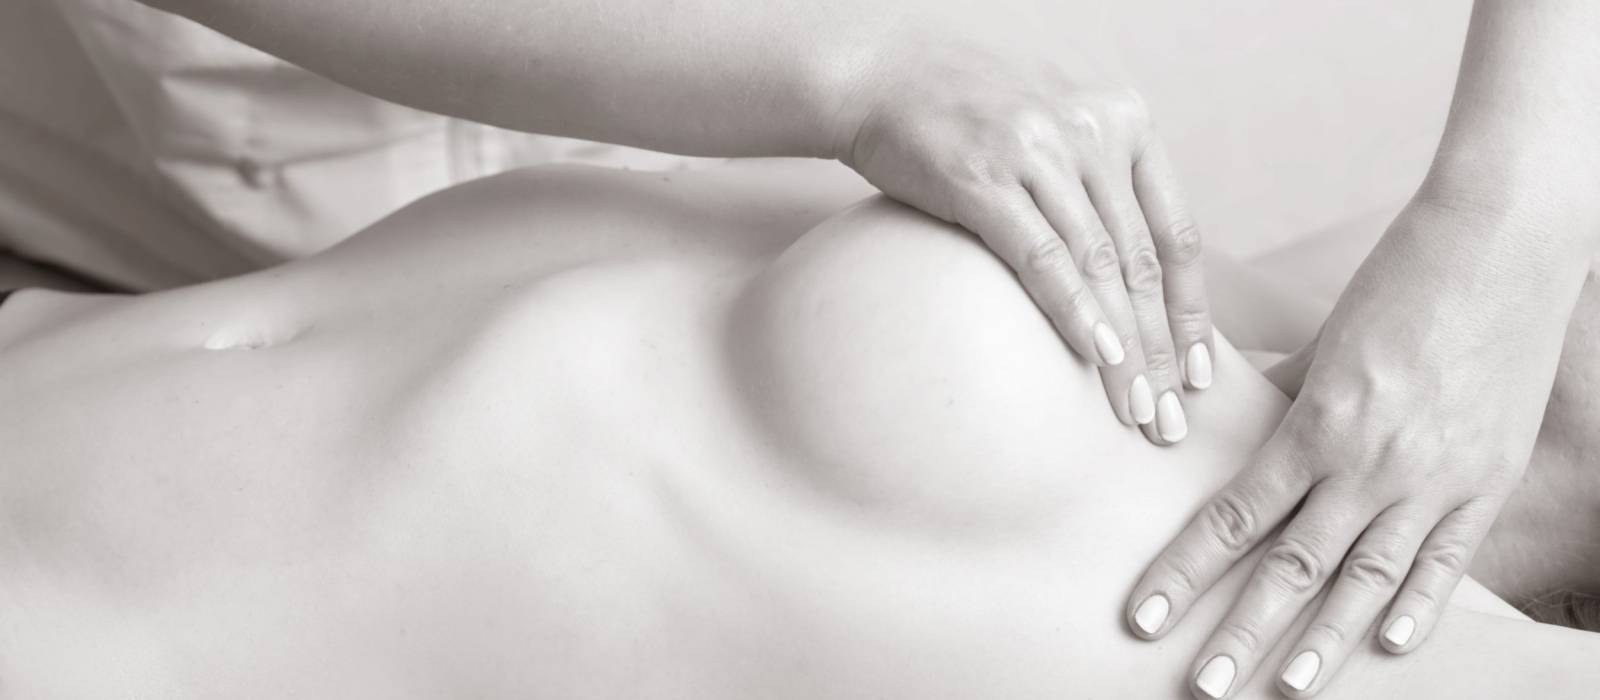 Augmentation mammaire par implants - Dr Hamou